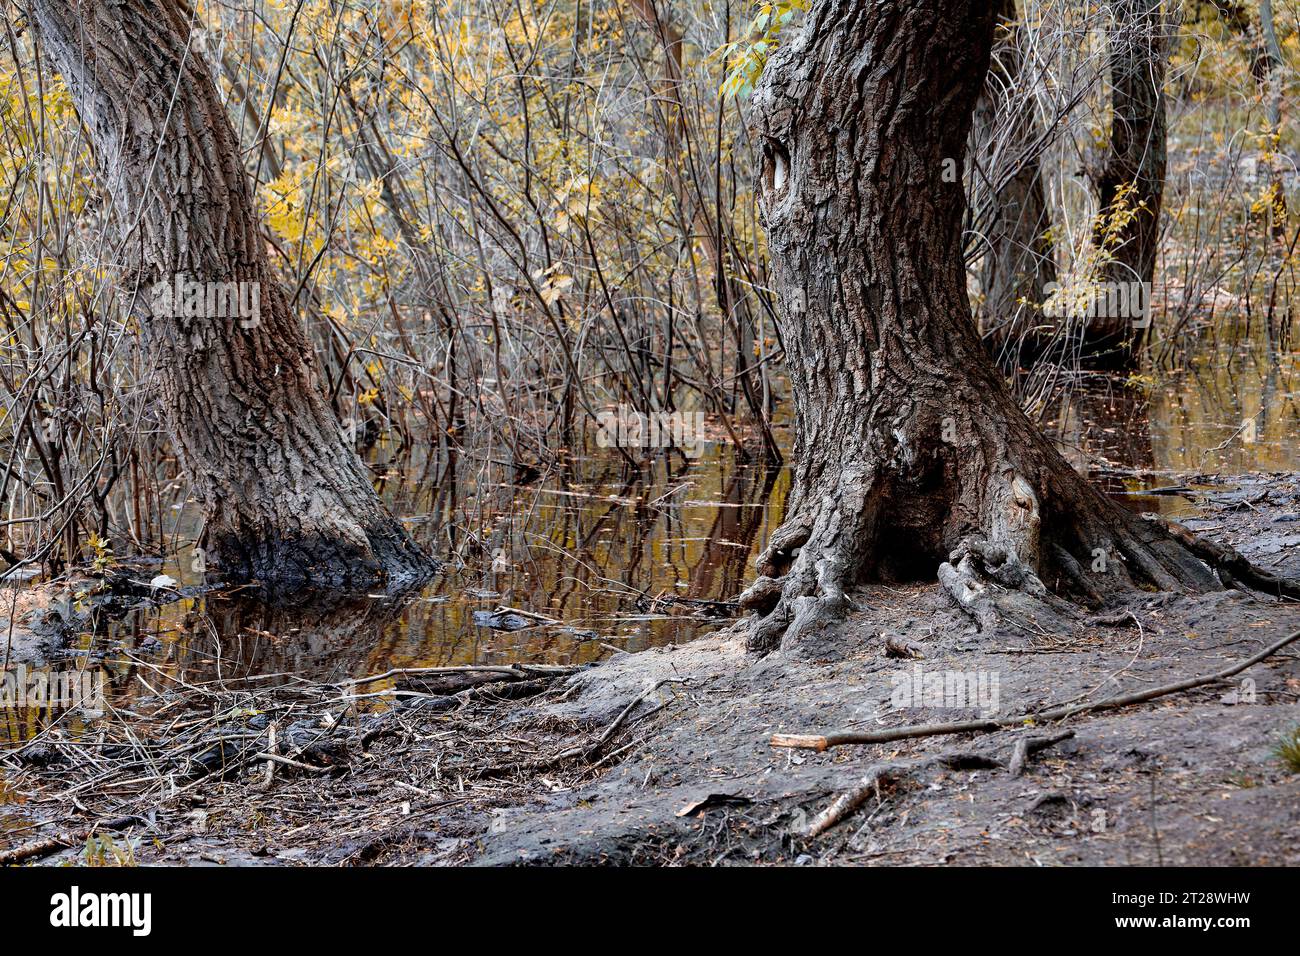 Image d'arbres et de buissons près de l'eau avec des feuilles jaunes Banque D'Images